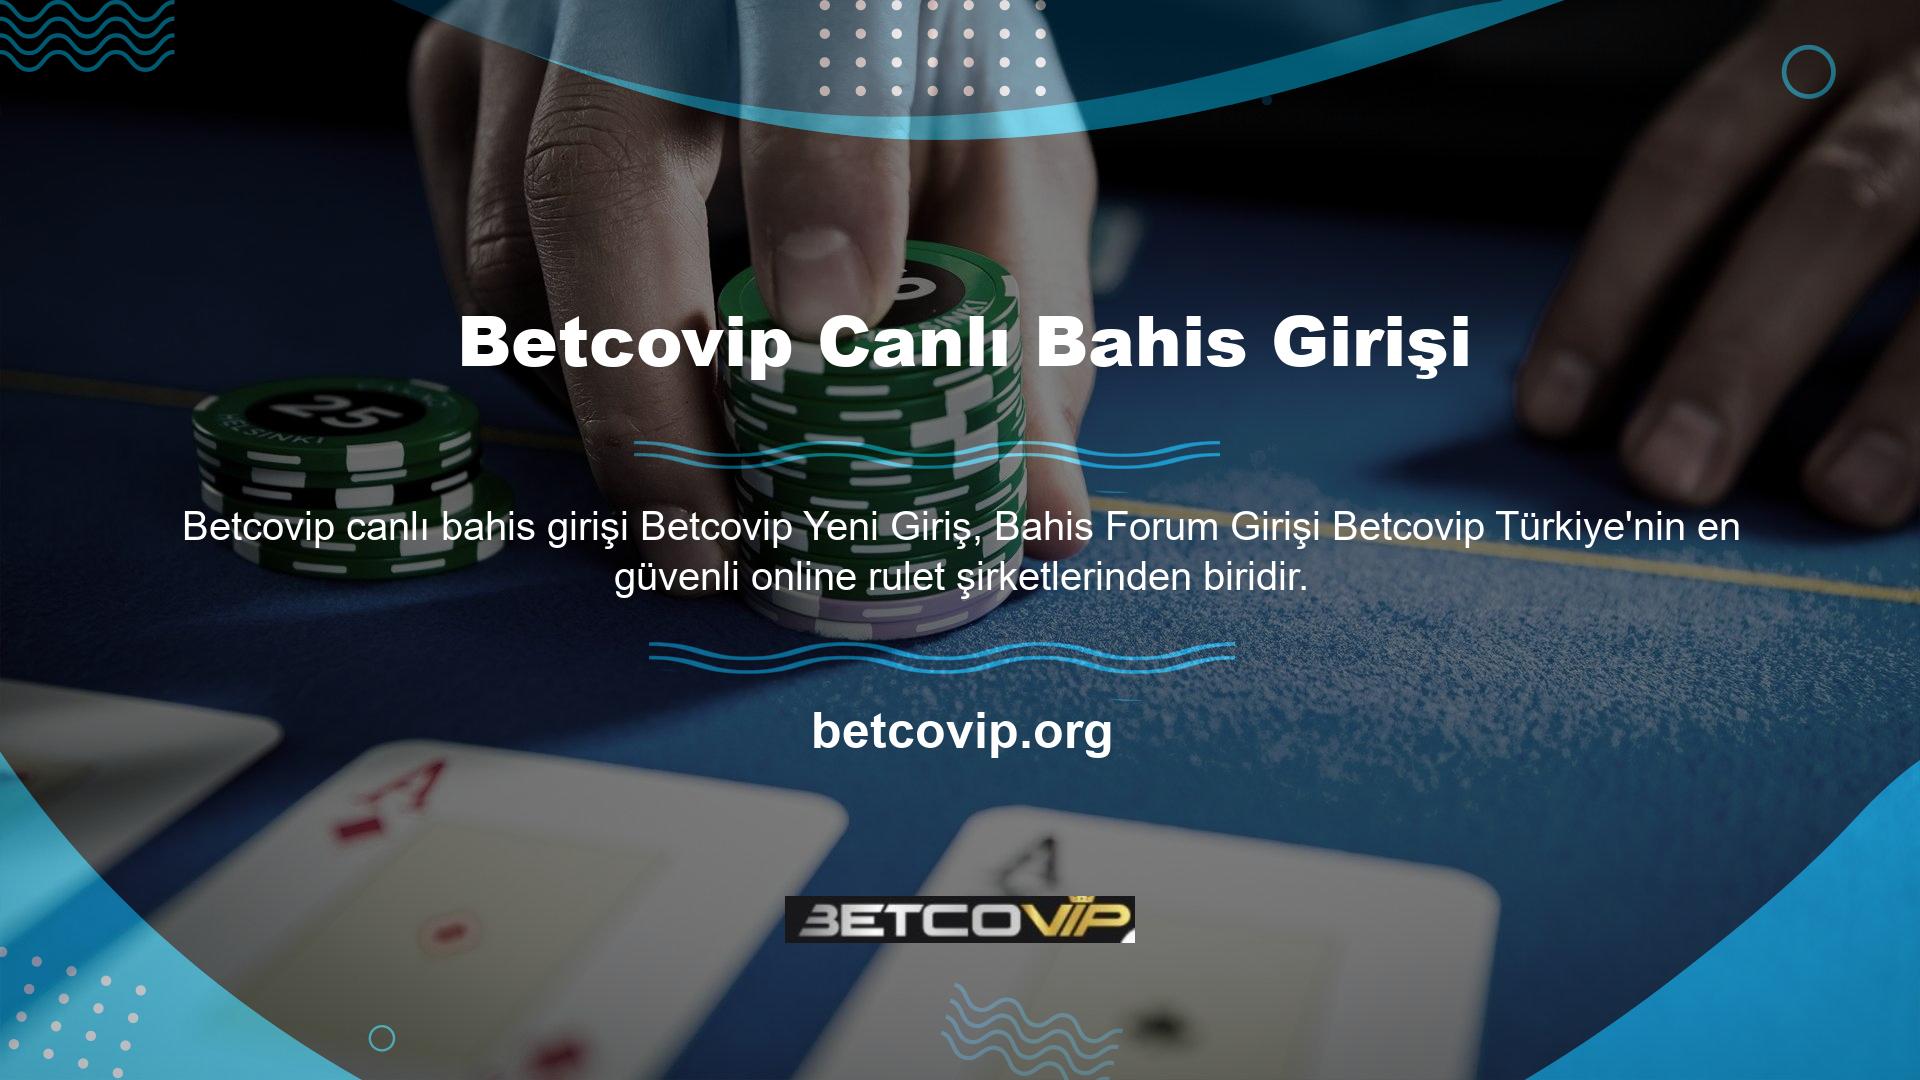 Betcovip, ülkemizdeki tüm casinoları yöneten en ünlü ve değerli bahis kuruluşlarından biridir